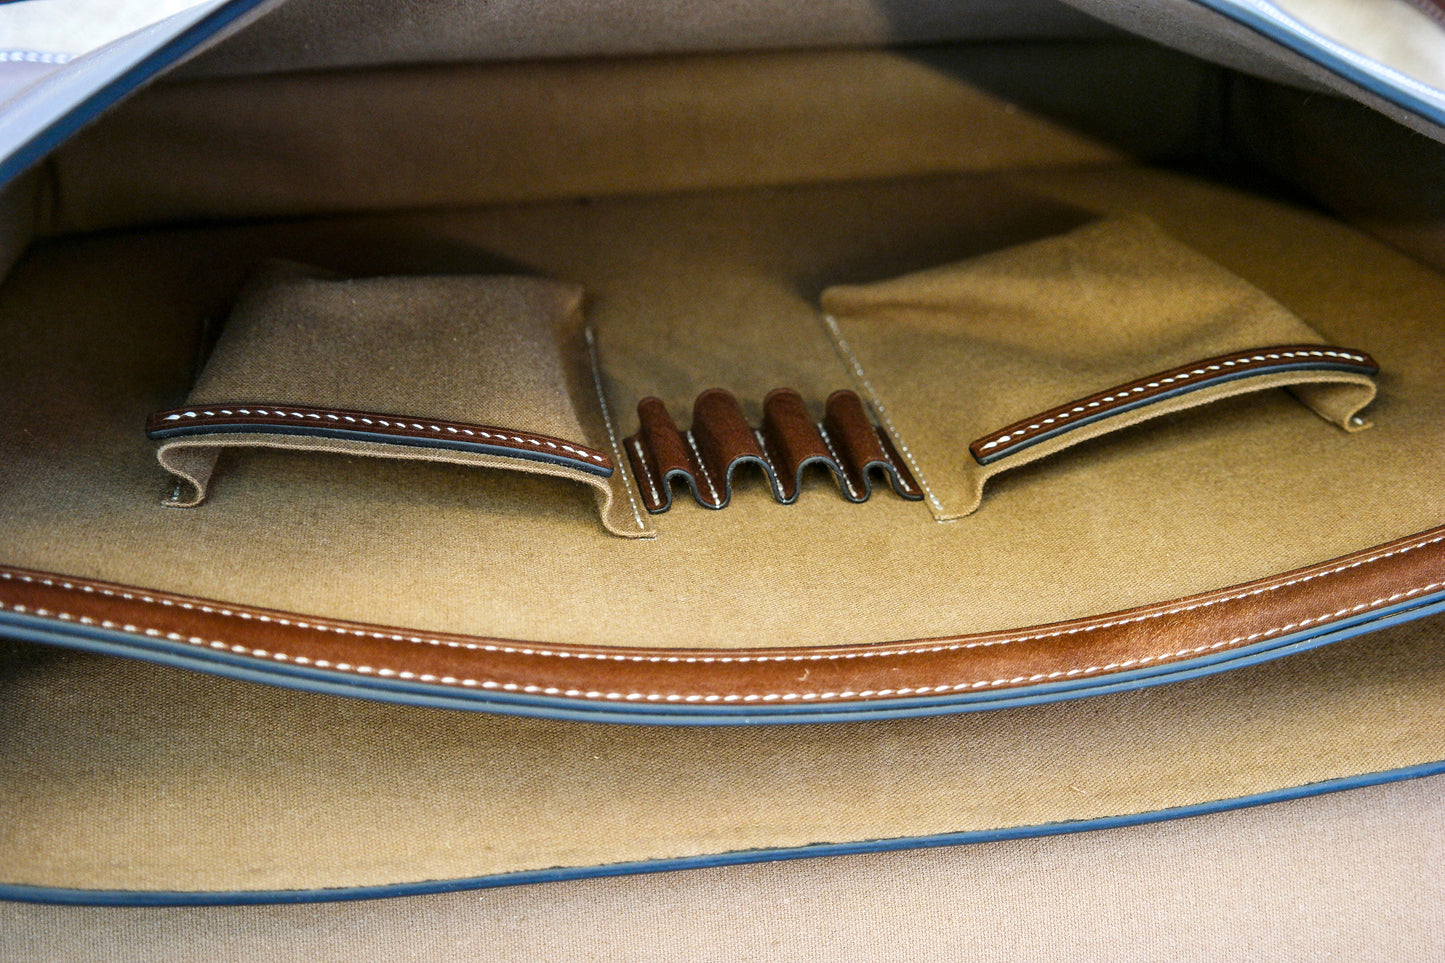 【Physical Pattern】leather messenger bag pattern Vintage Crossbody Messenger Bag Satchel Purse Handbag Briefcase